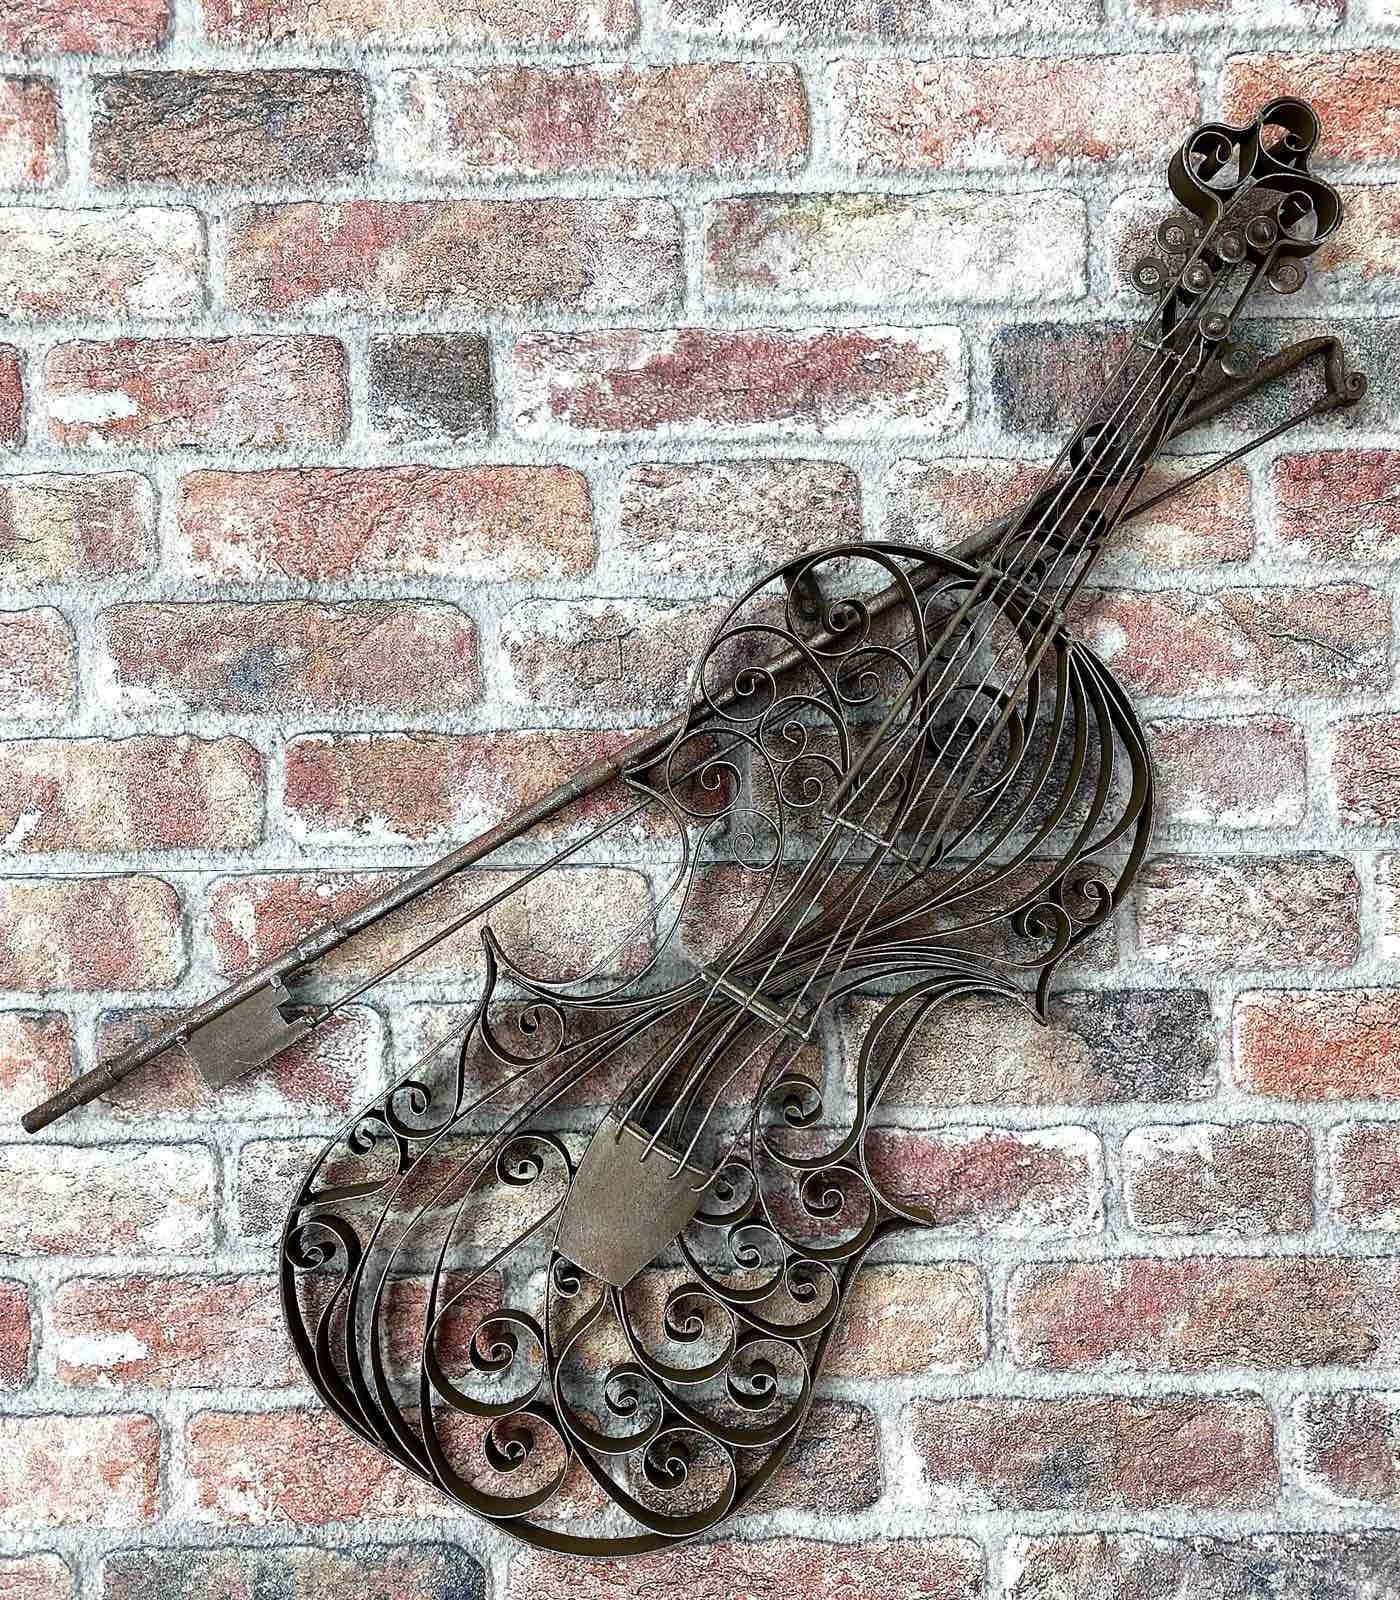 Garte Aubaho Instrument Modell Metall Violine Dekoration Wanddekoration Geige Gartenfigur